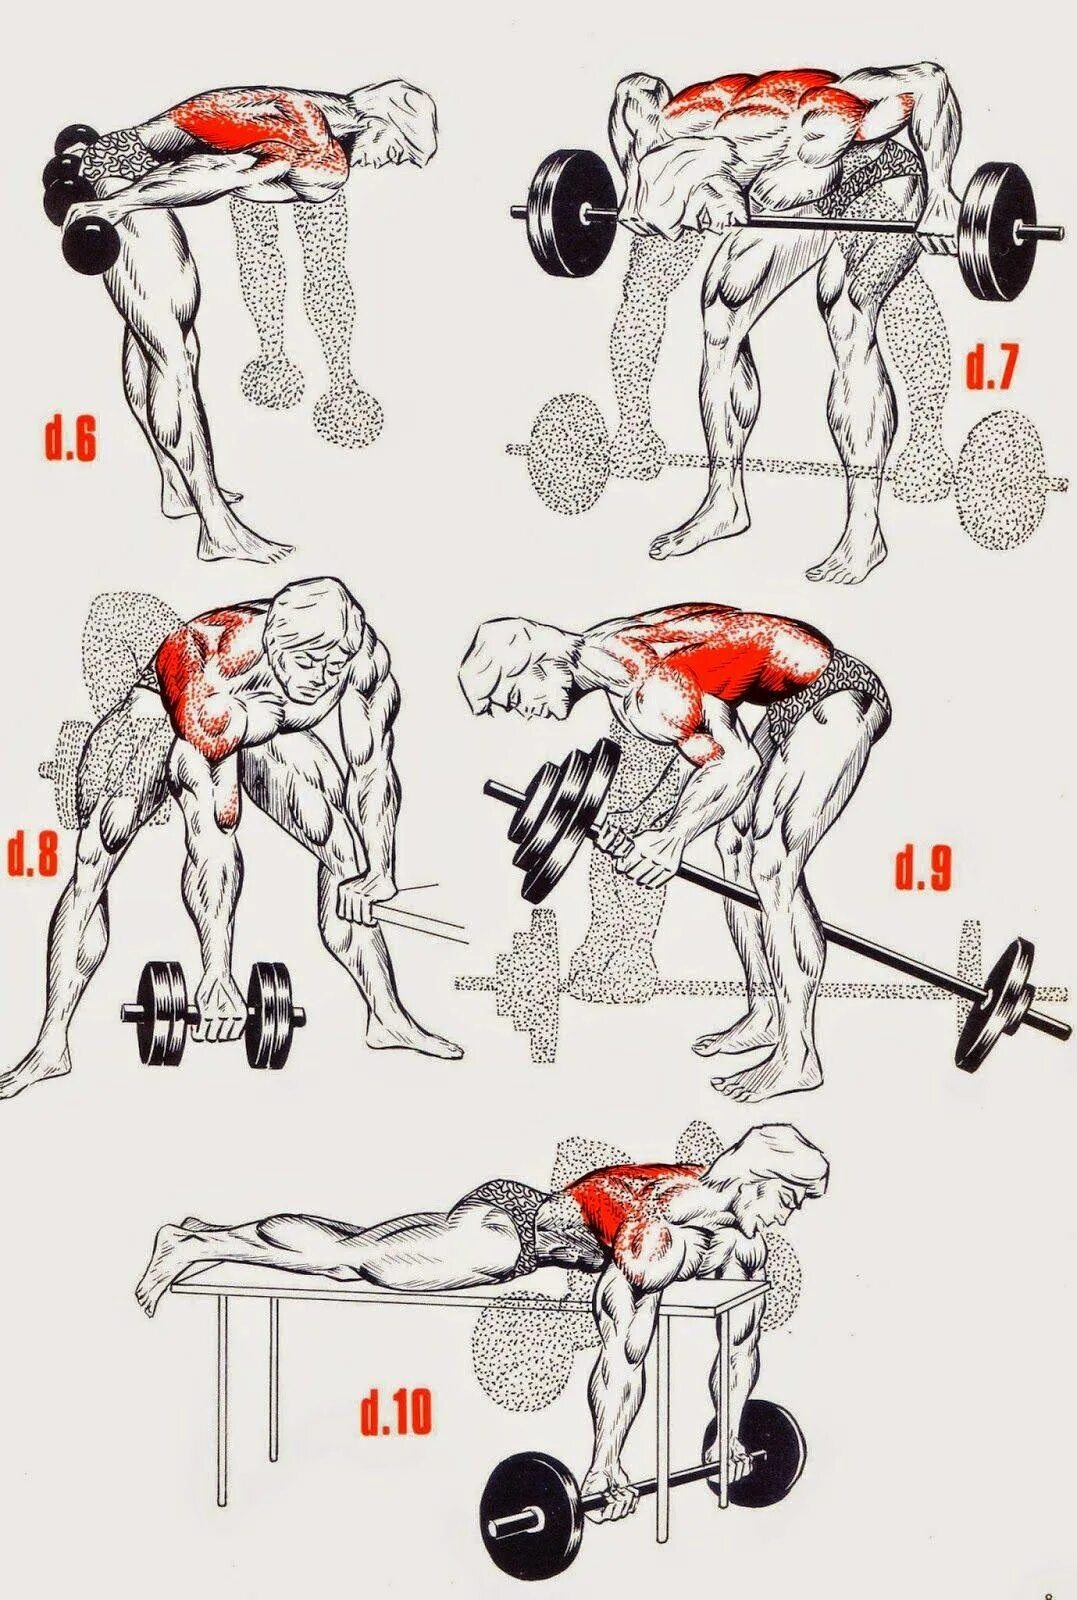 Как накачать спину мужчине. Как прокачать мышцы спины. Упражнения для раскачки спины. Упражнения для накачивания мышц спины. Упражнения для прокачки спины.